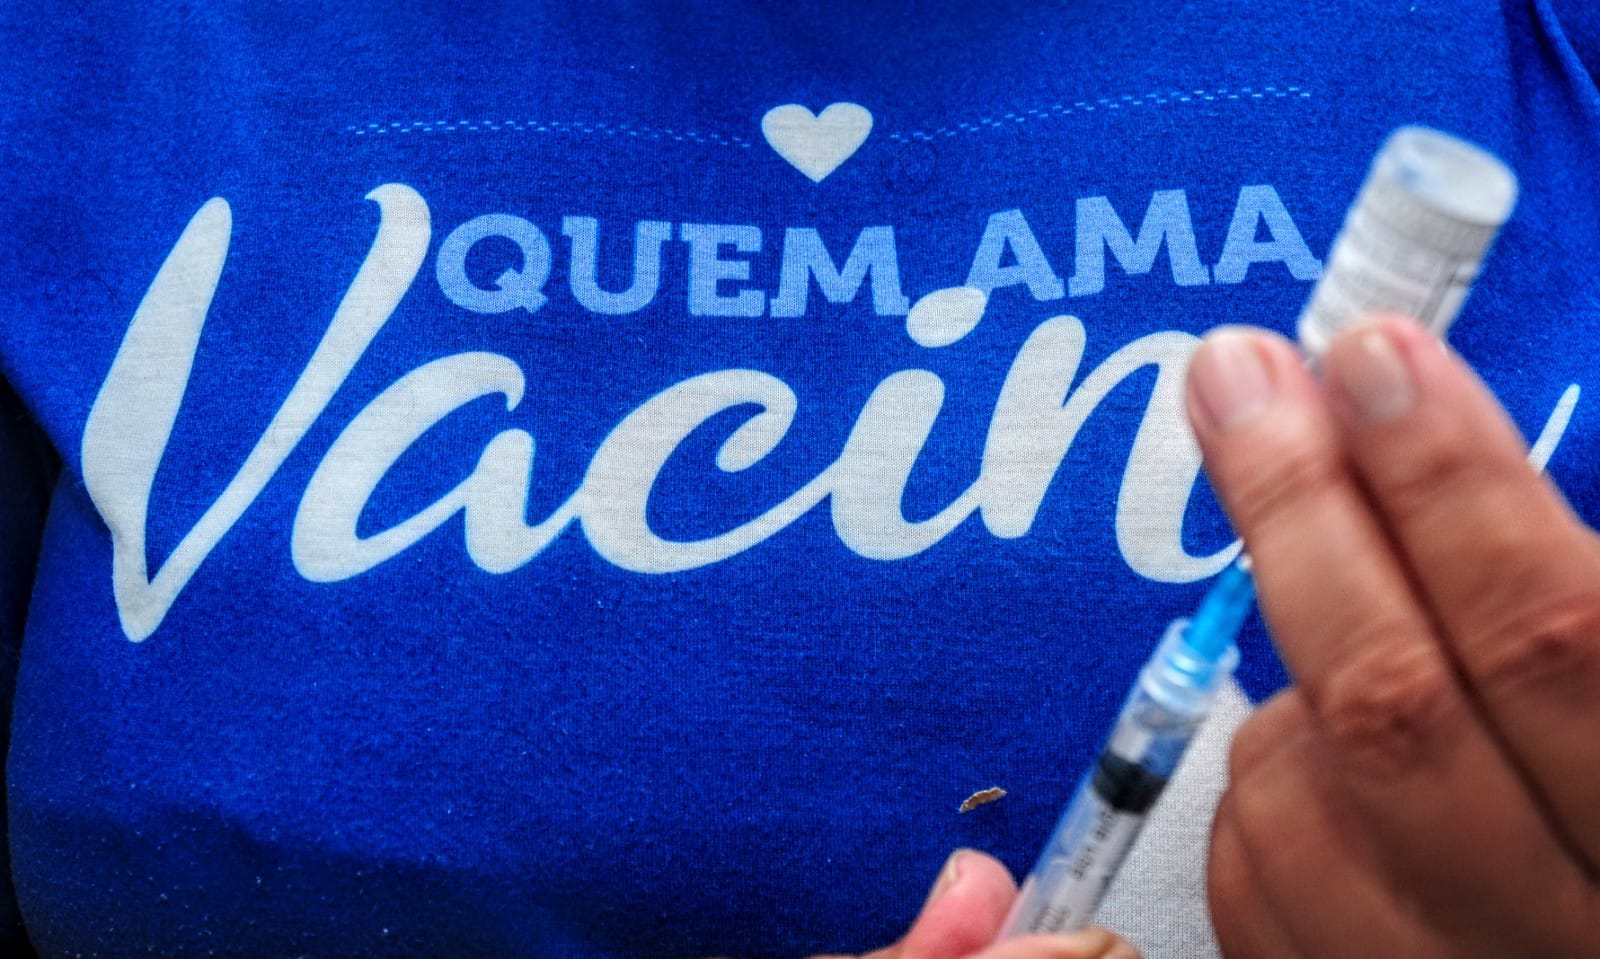 Campanha “Mossoró Vacina” aplica 2,6 mil doses de imunizantes neste sábado